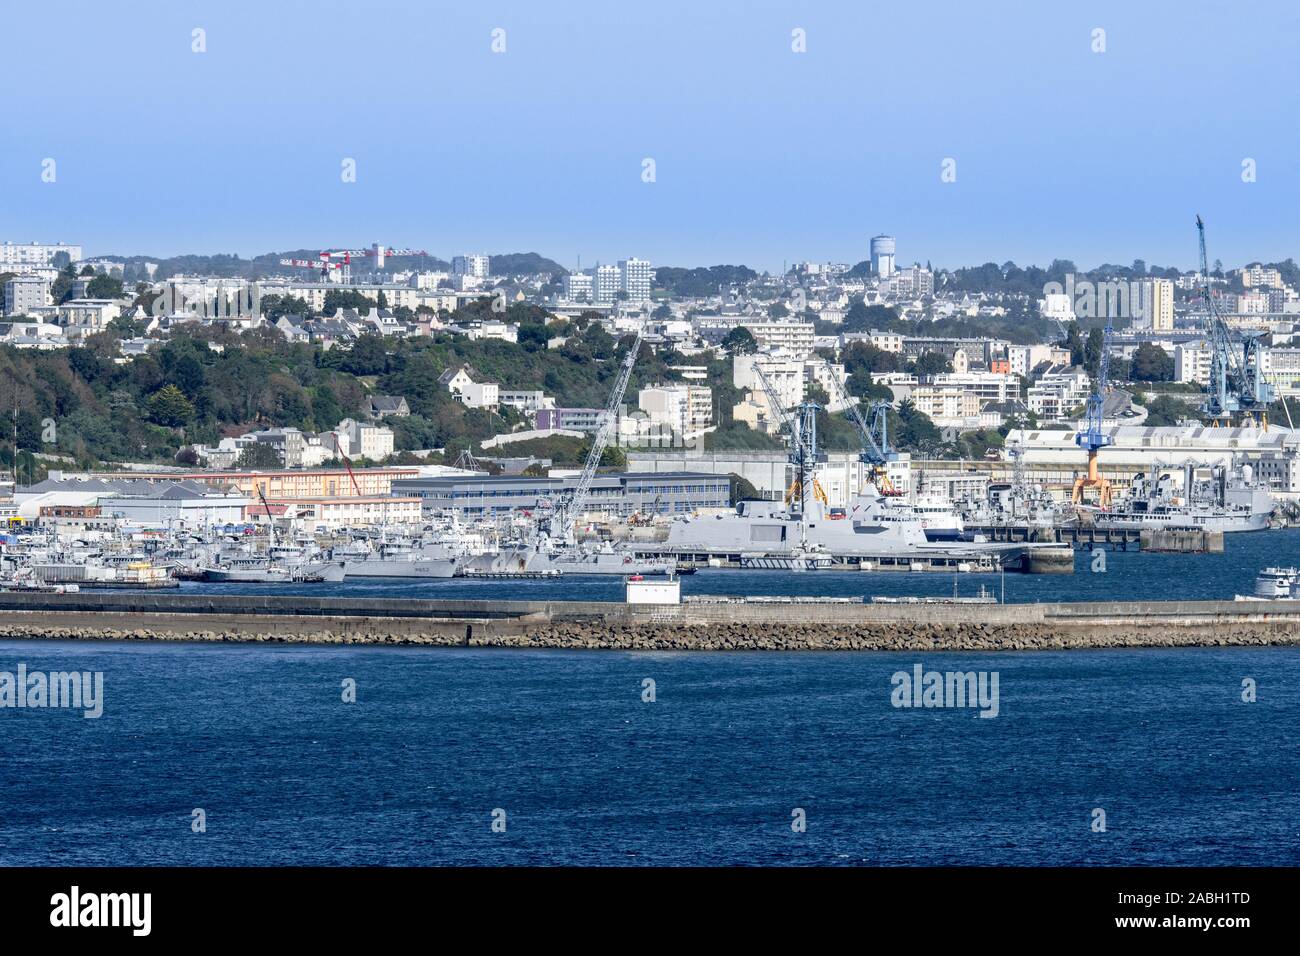 Schiffe der französischen Marine angedockt im militärischen Hafen / Hafen der Stadt Brest aus der Pointe des Espagnols, Finistère, Bretagne, Frankreich Stockfoto